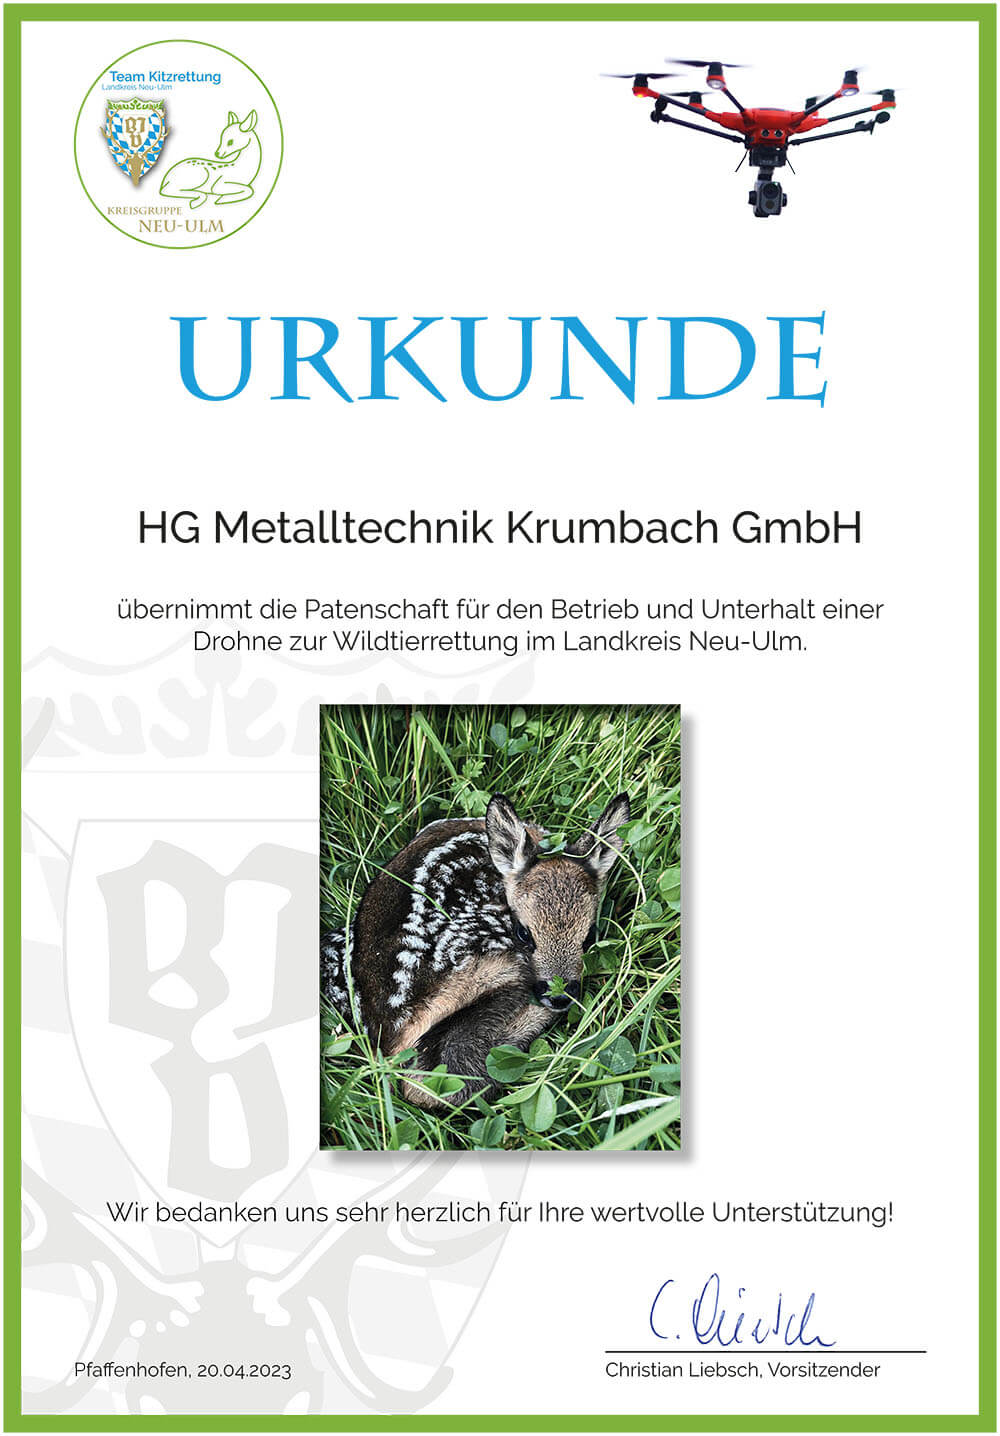 Patenschaftsurkunde HG Metalltechnik Krumbach GmbH